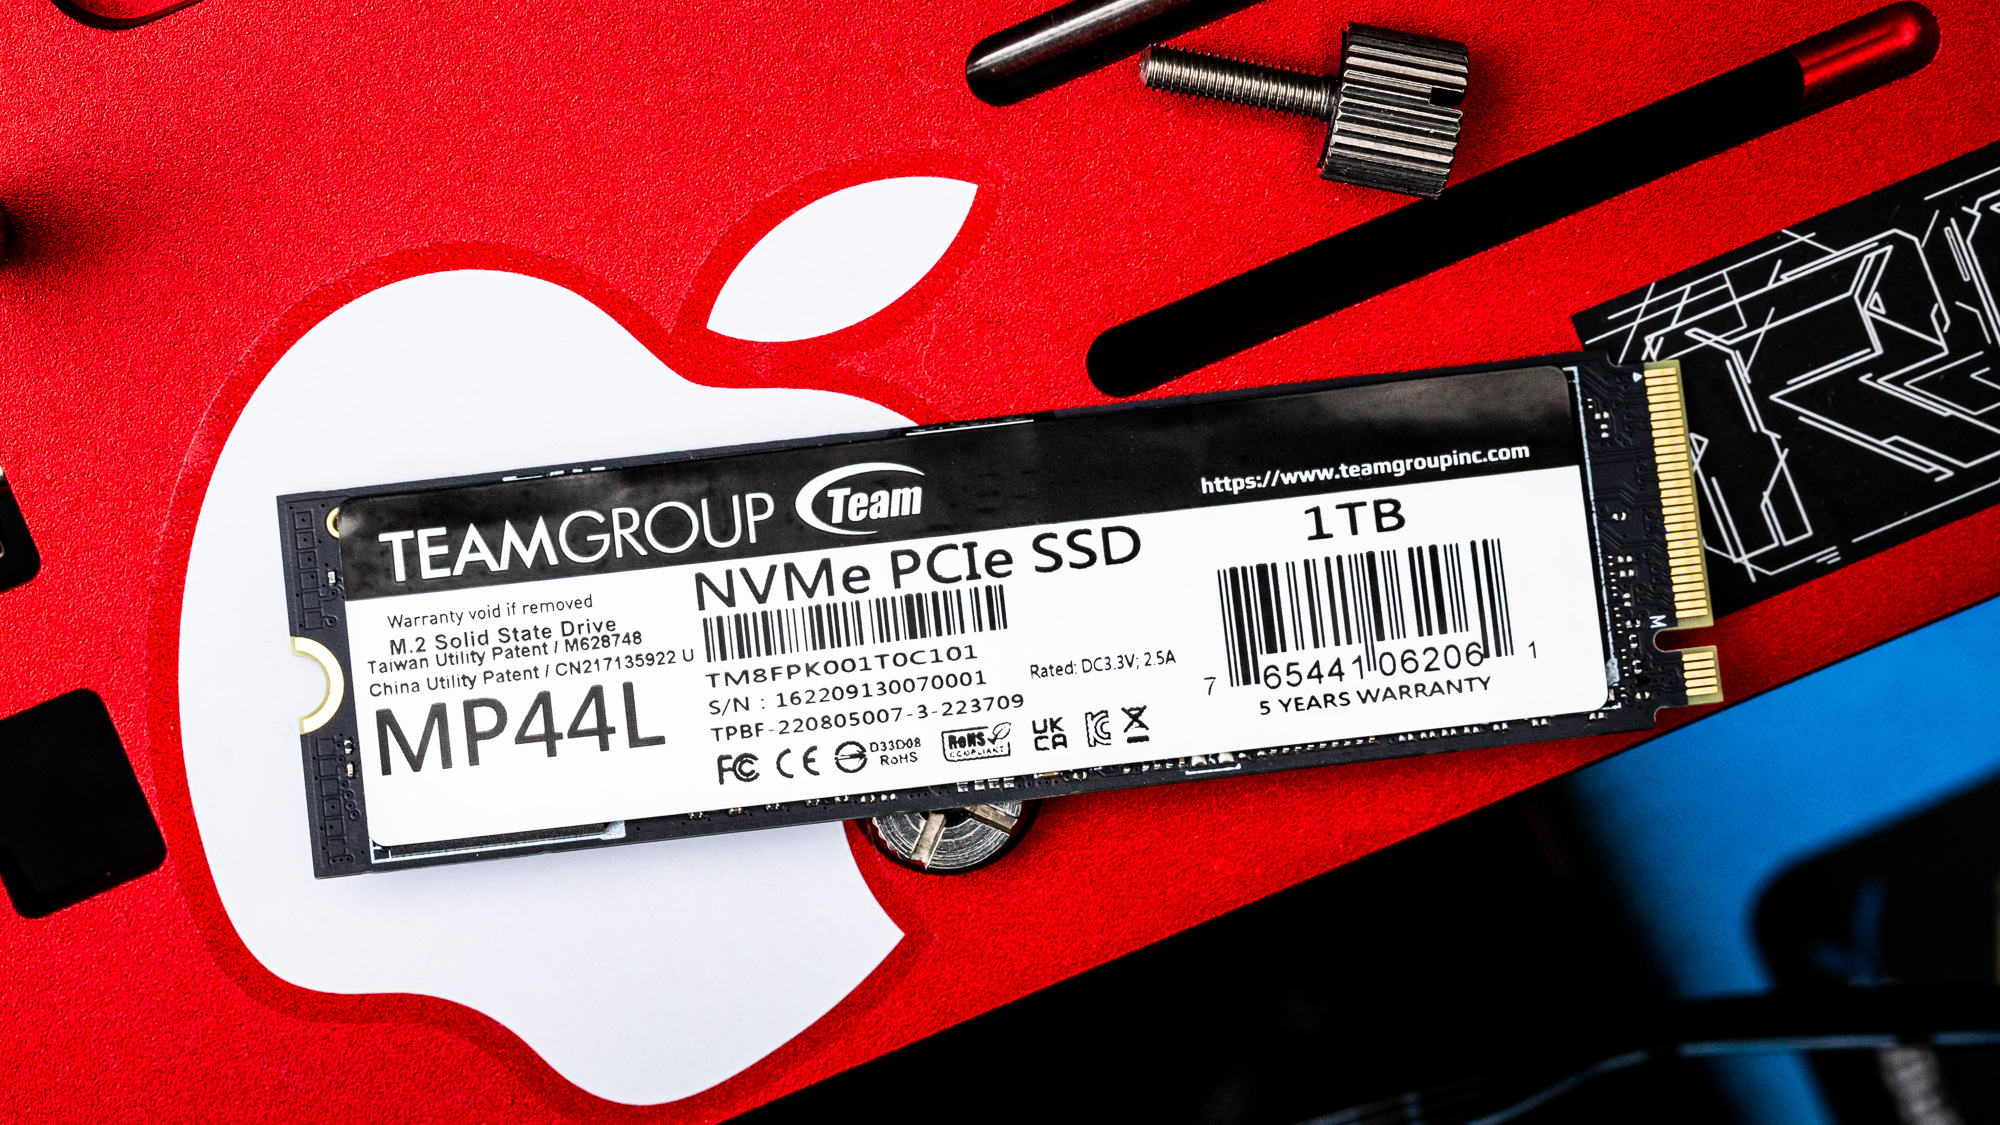 MP44L M.2 PCIe 4.0 SSD 2TB